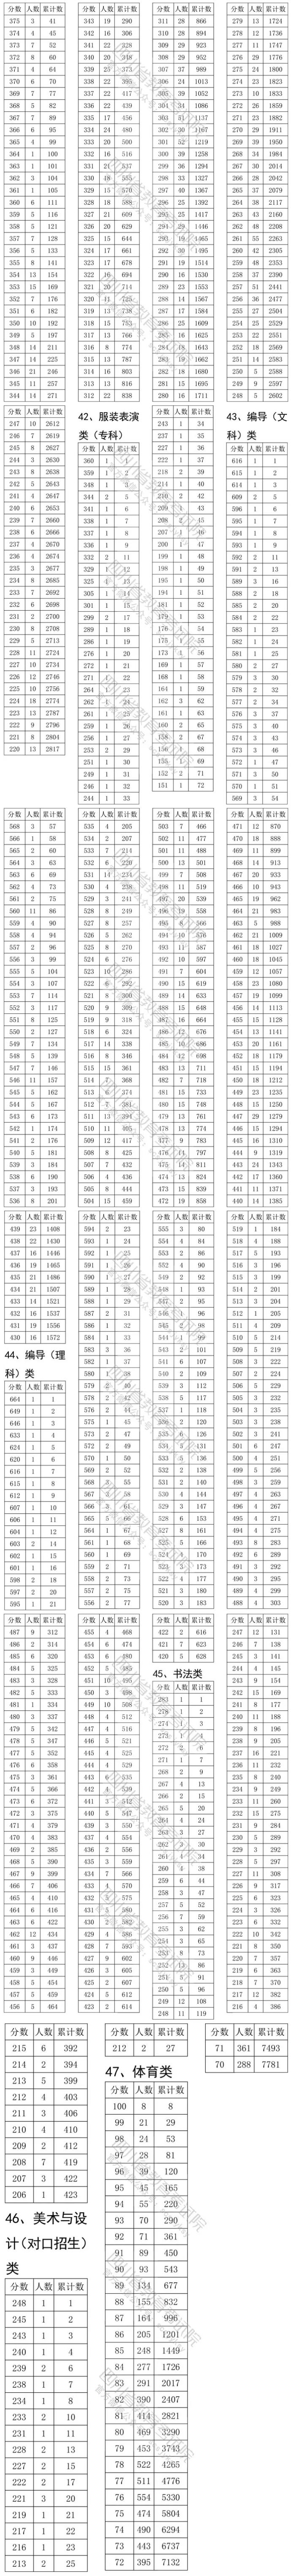 2020四川艺术体育类专业一分一段统计表